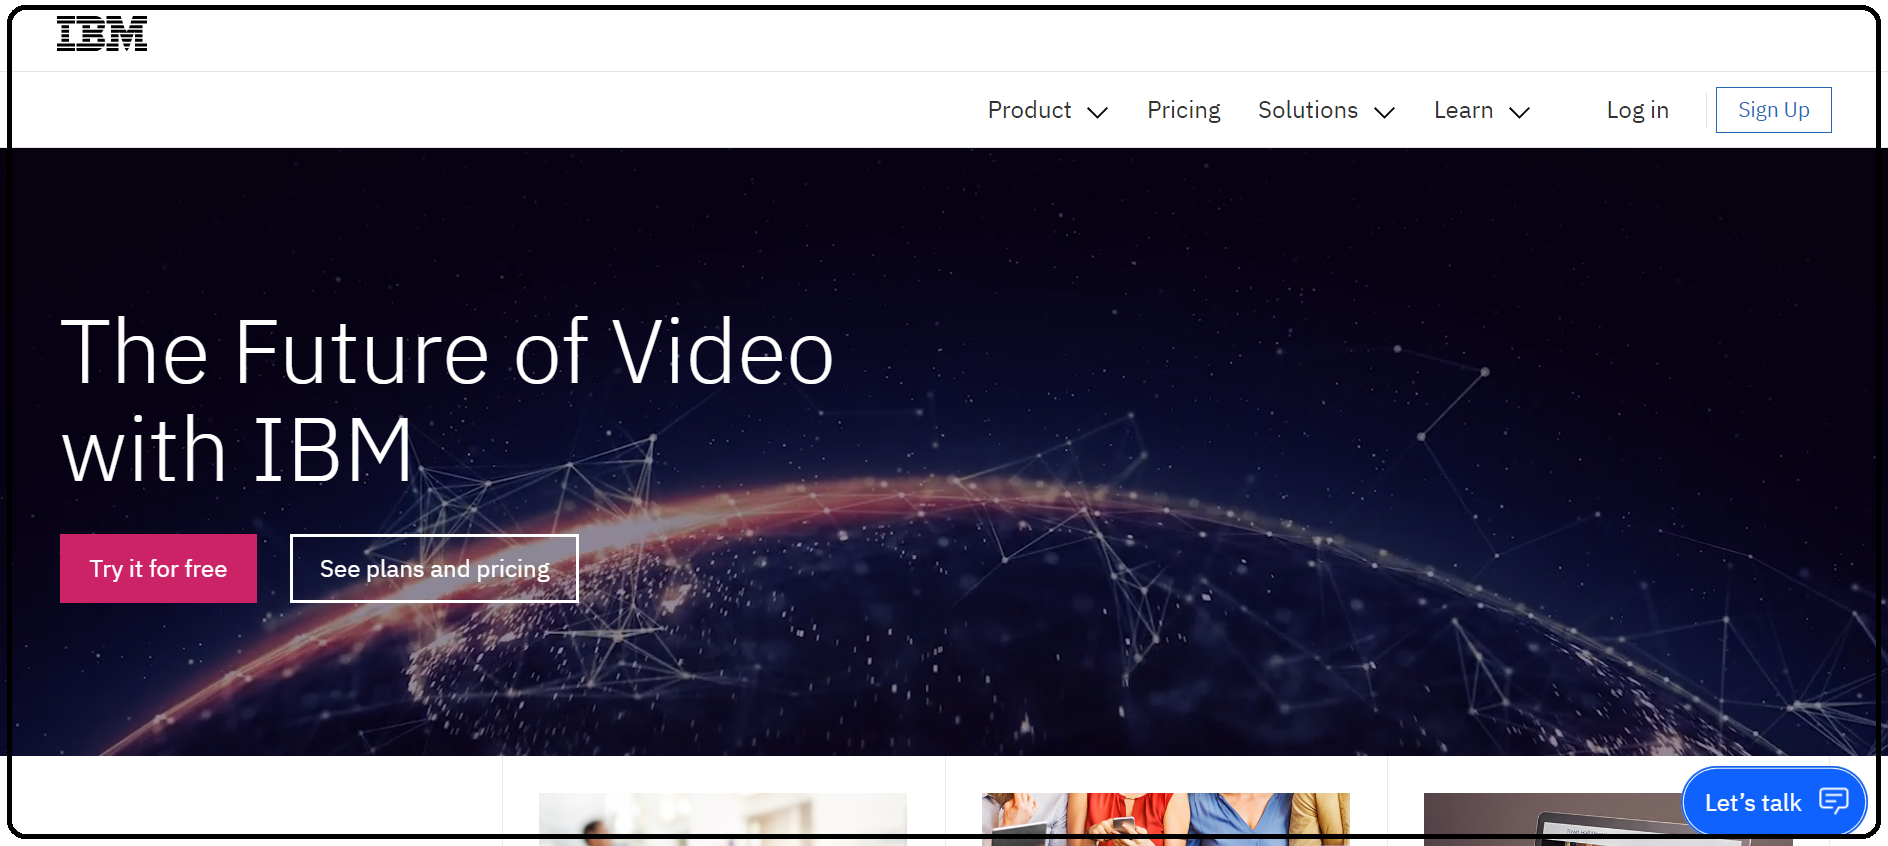 monetize education video content